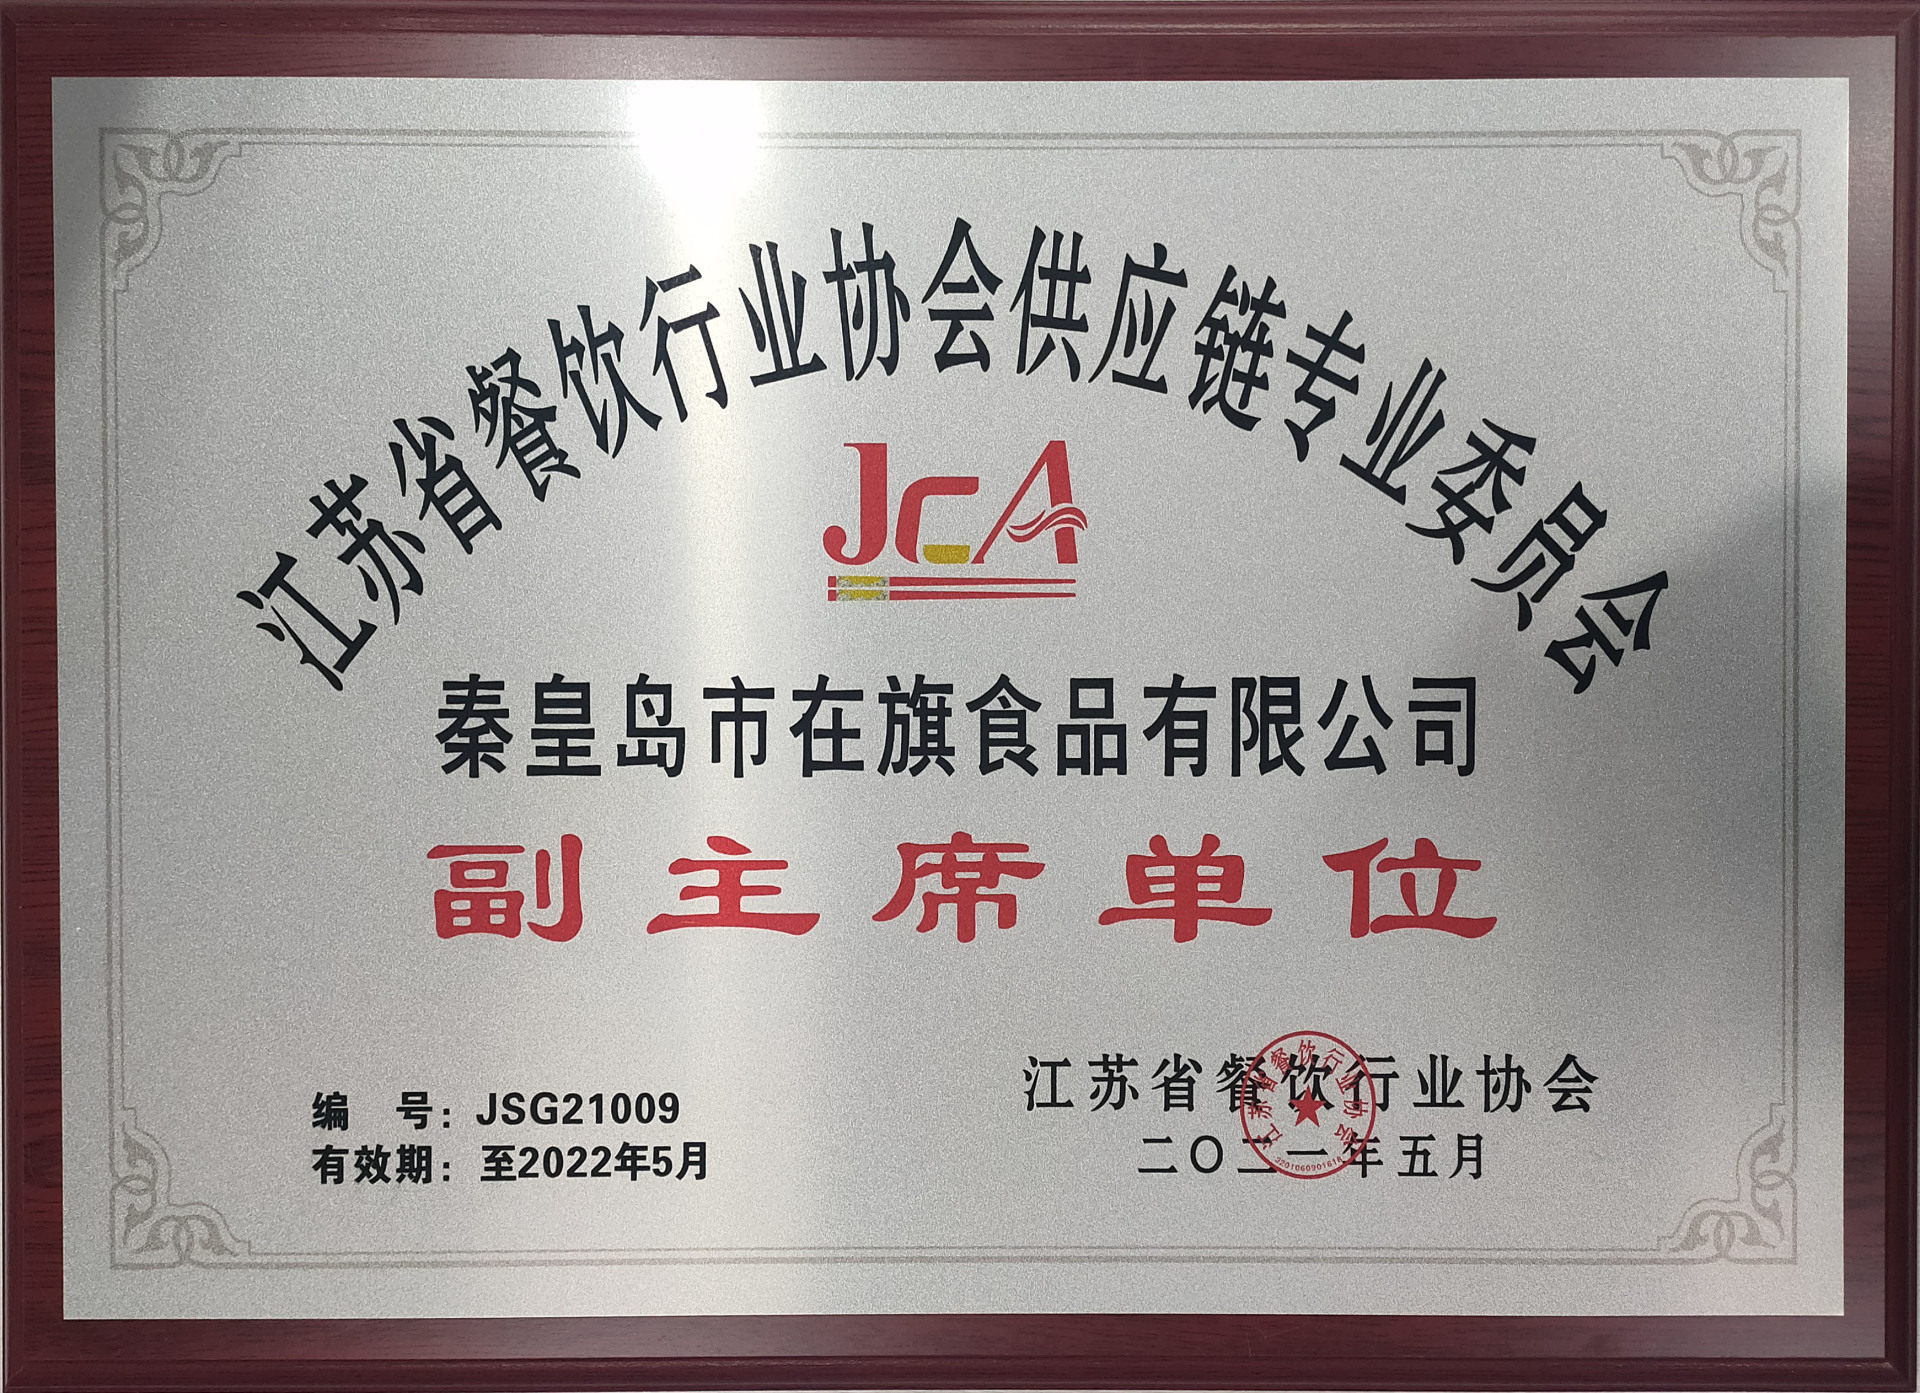 江苏省餐饮行业协会供应链专业委员会副主席单位